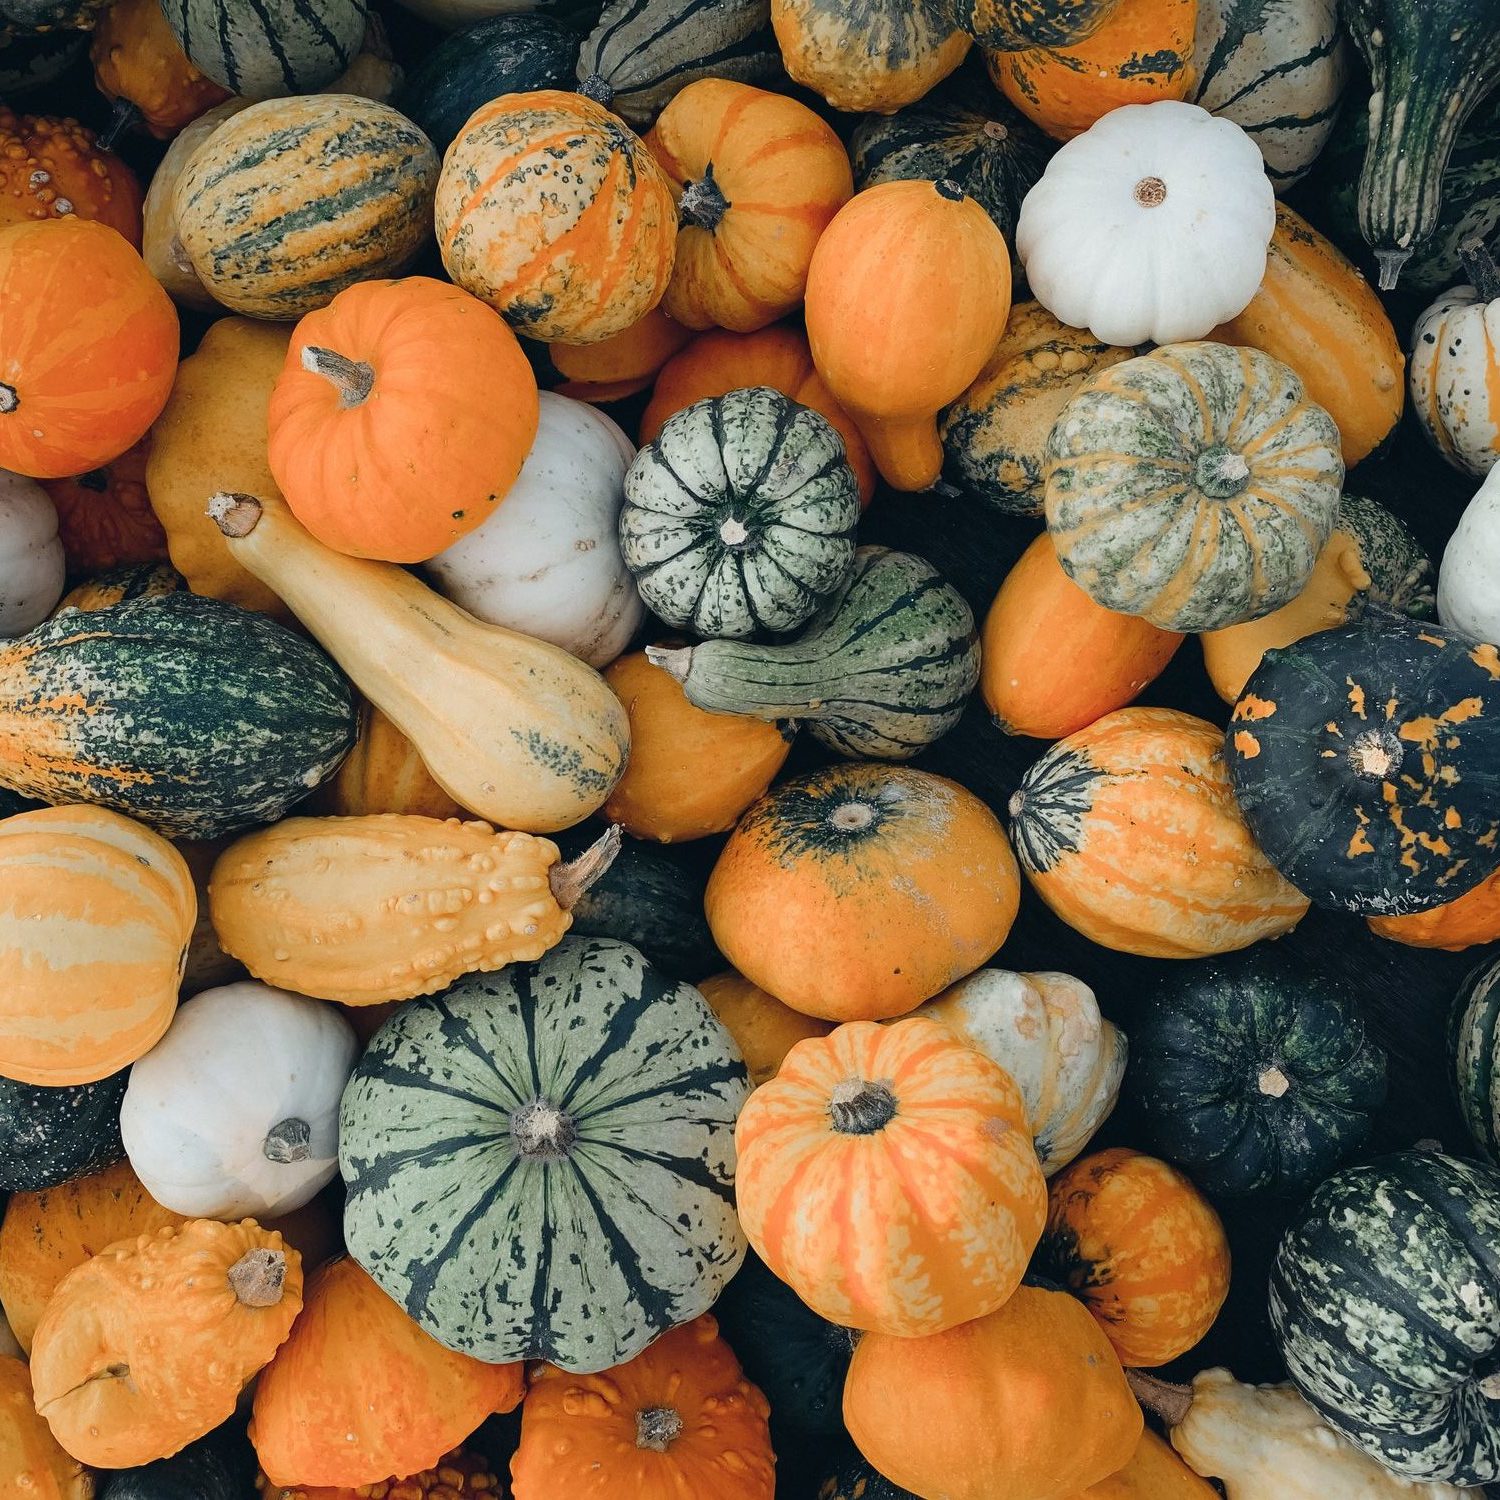 How to Reuse your Halloween Pumpkins